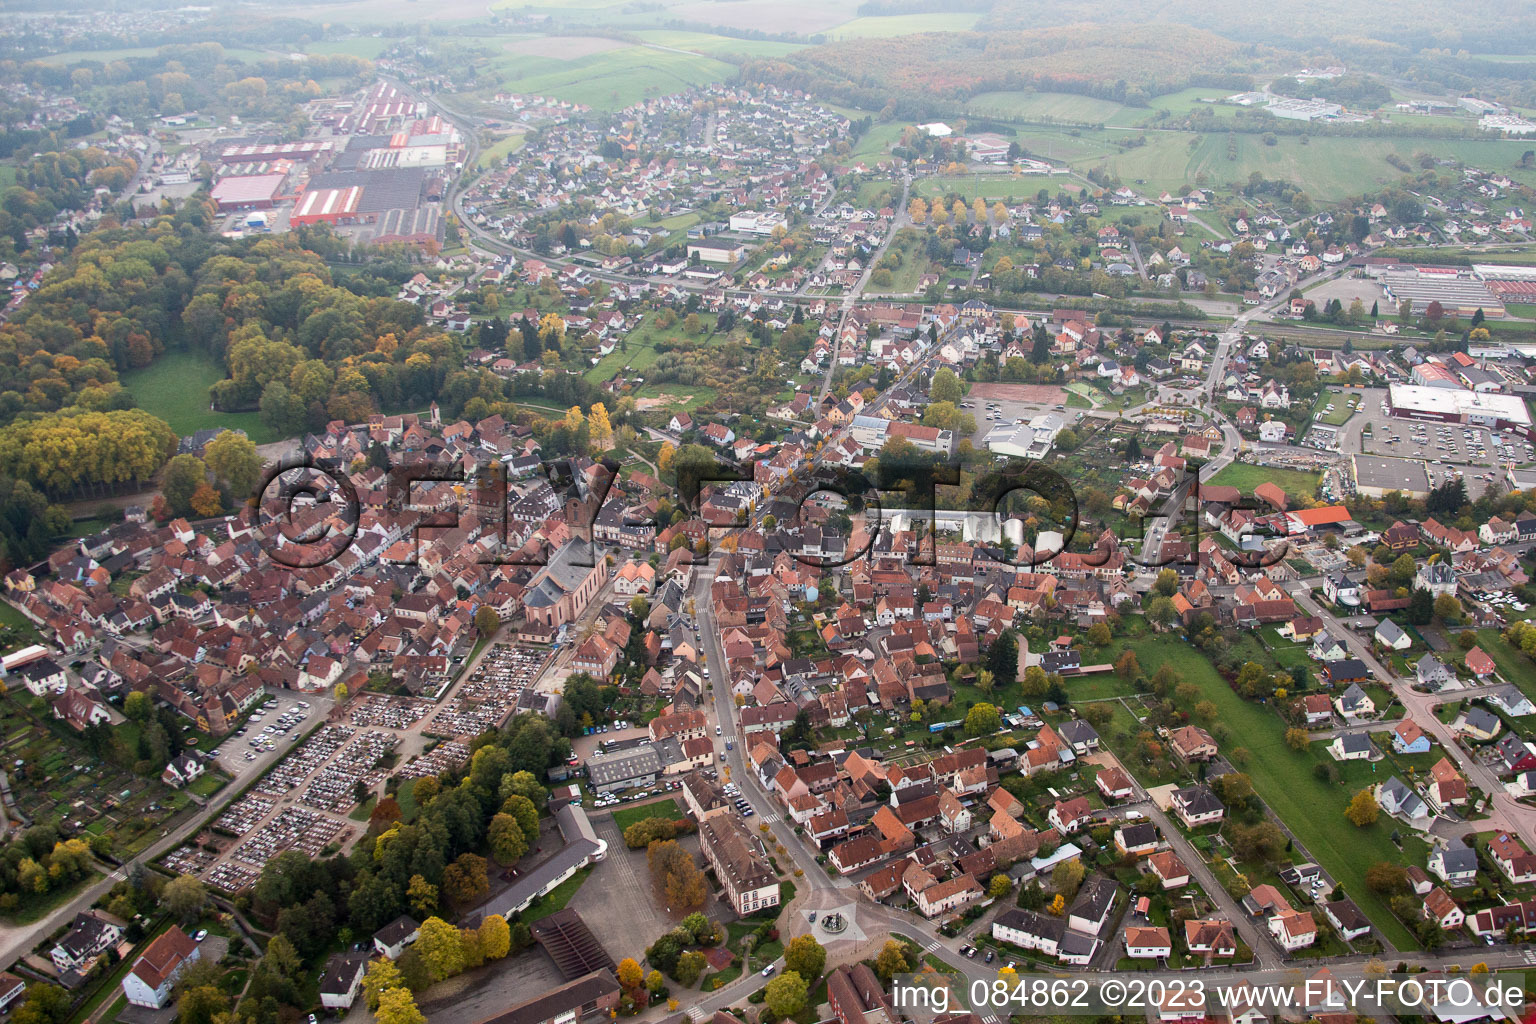 Reichshoffen im Bundesland Bas-Rhin, Frankreich aus der Luft betrachtet